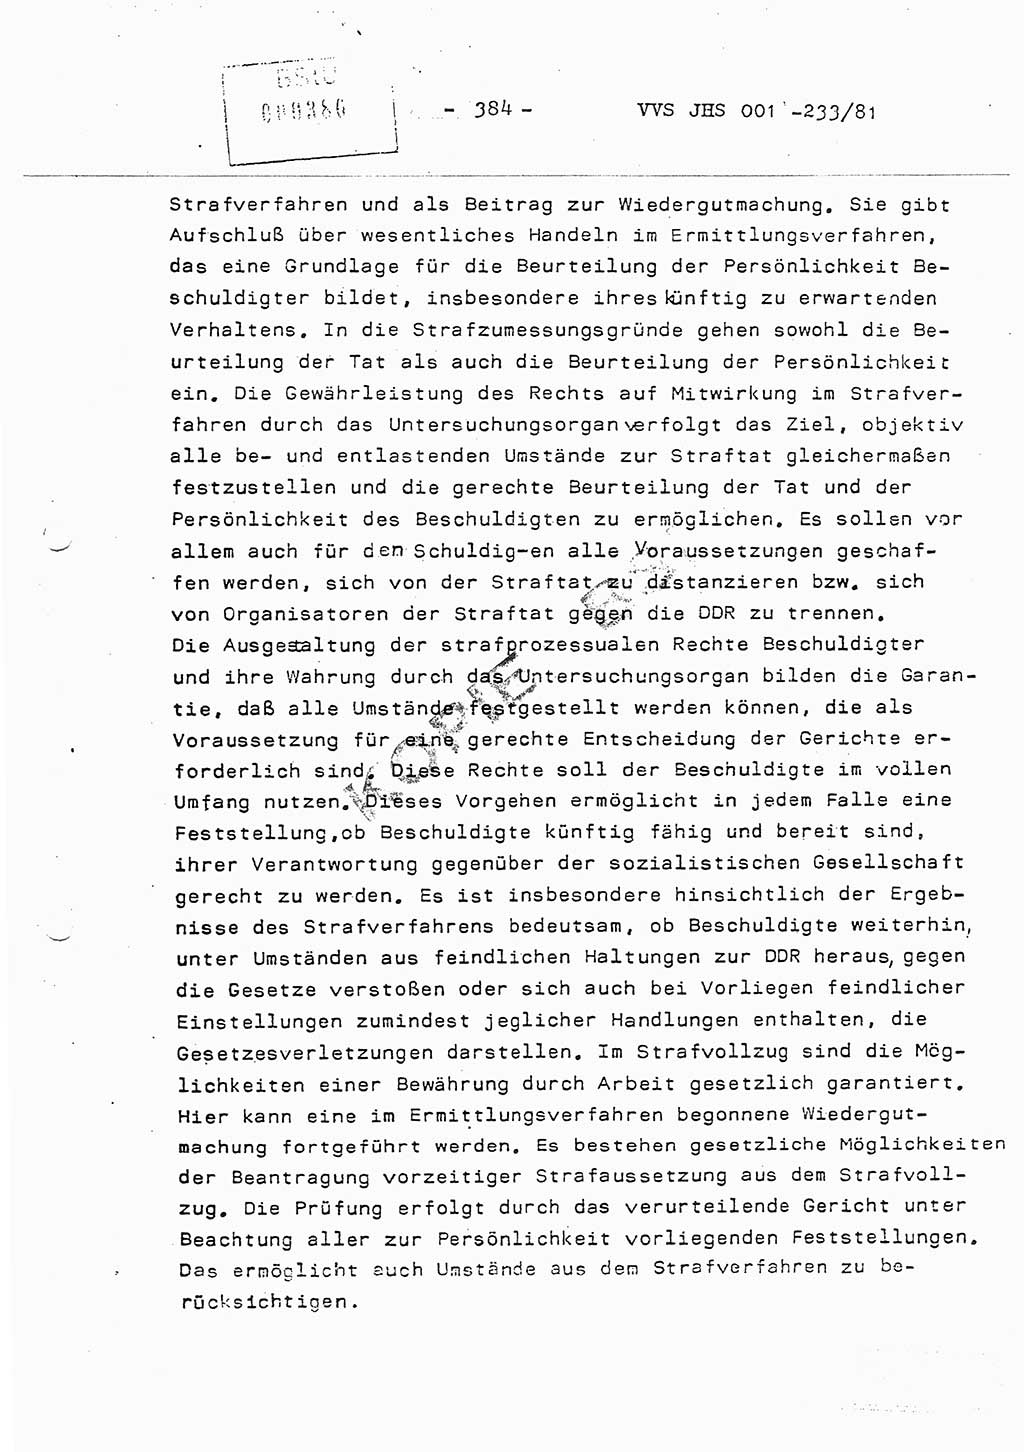 Dissertation Oberstleutnant Horst Zank (JHS), Oberstleutnant Dr. Karl-Heinz Knoblauch (JHS), Oberstleutnant Gustav-Adolf Kowalewski (HA Ⅸ), Oberstleutnant Wolfgang Plötner (HA Ⅸ), Ministerium für Staatssicherheit (MfS) [Deutsche Demokratische Republik (DDR)], Juristische Hochschule (JHS), Vertrauliche Verschlußsache (VVS) o001-233/81, Potsdam 1981, Blatt 384 (Diss. MfS DDR JHS VVS o001-233/81 1981, Bl. 384)